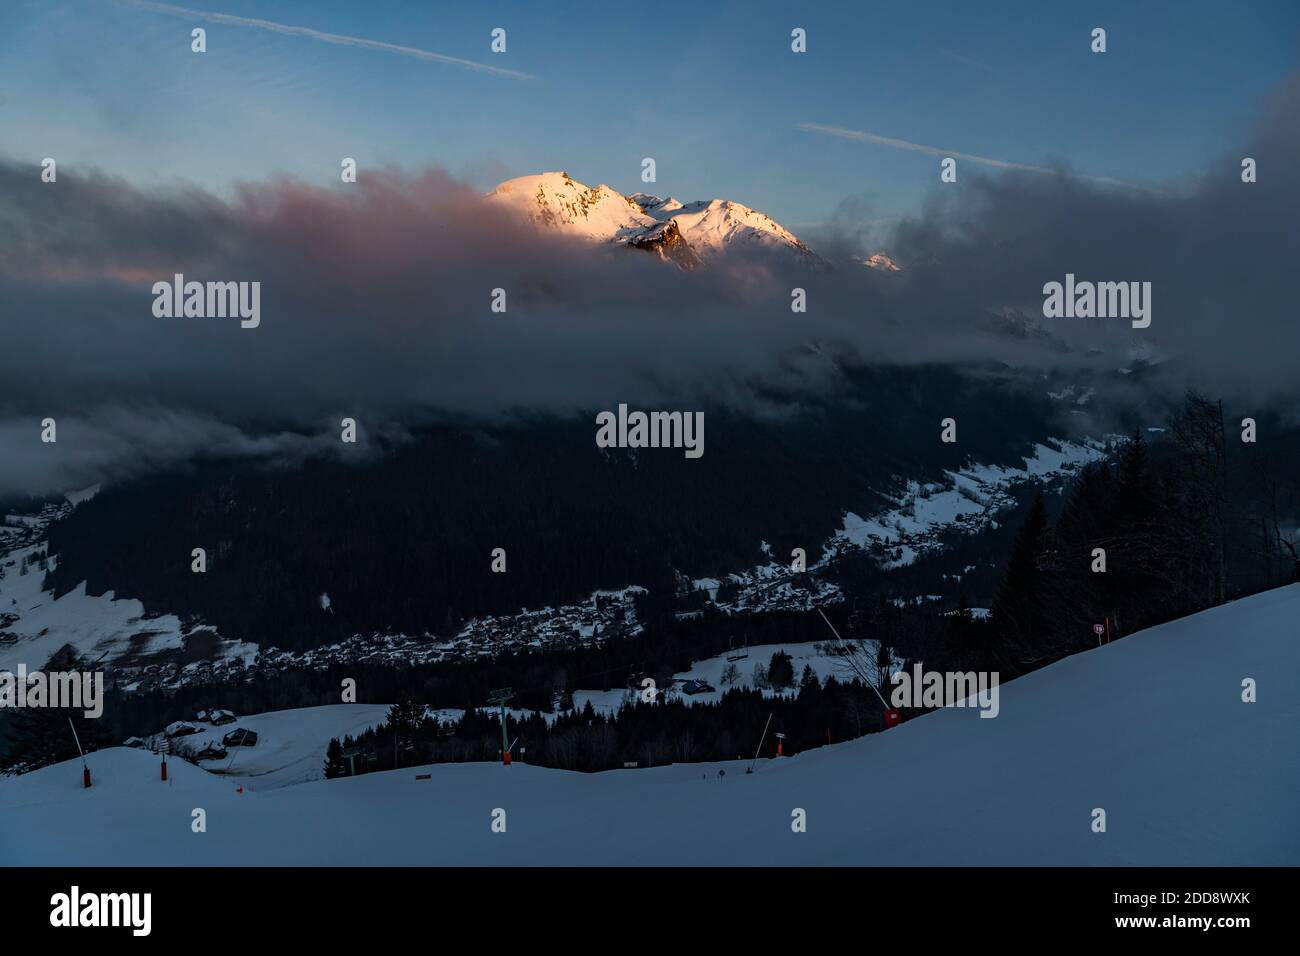 Belle montagne innevate con cielo spettacolare al tramonto presso la stazione sciistica di Morzine nella catena montuosa delle Alpi di Francia, Europa Foto Stock